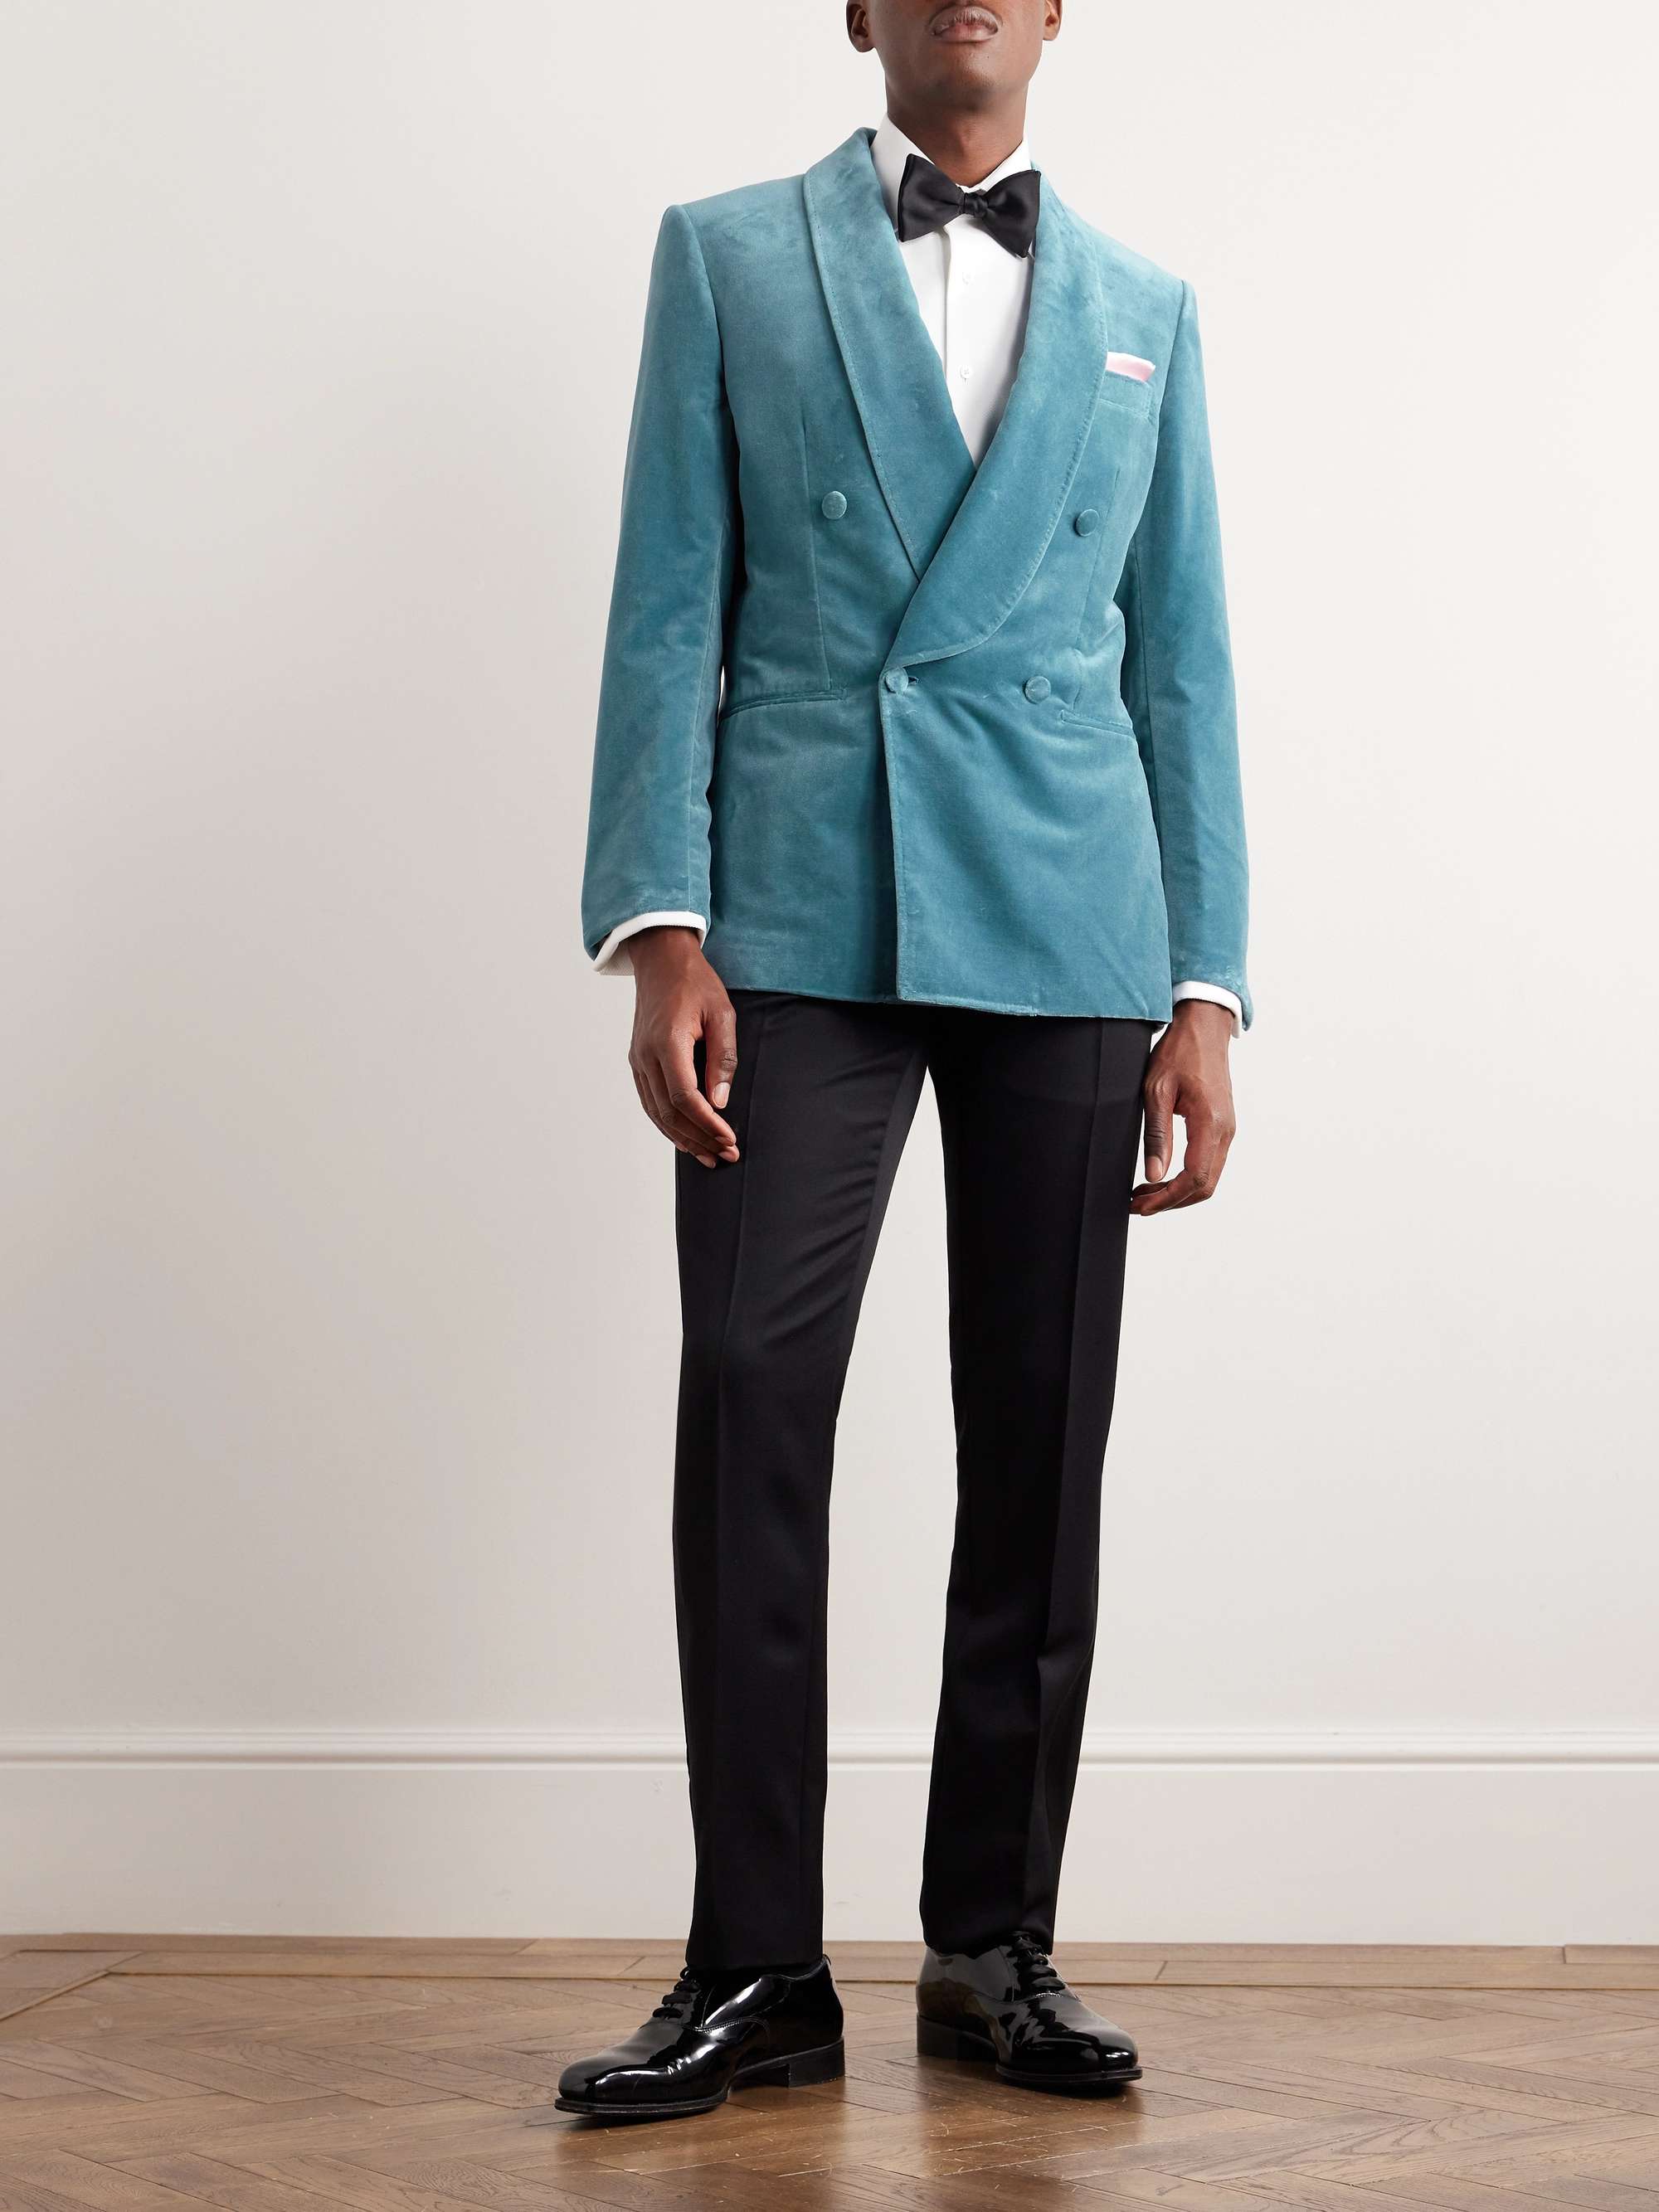 BRIONI Double-Breasted Cotton-Velvet Tuxedo Jacket for Men | MR PORTER